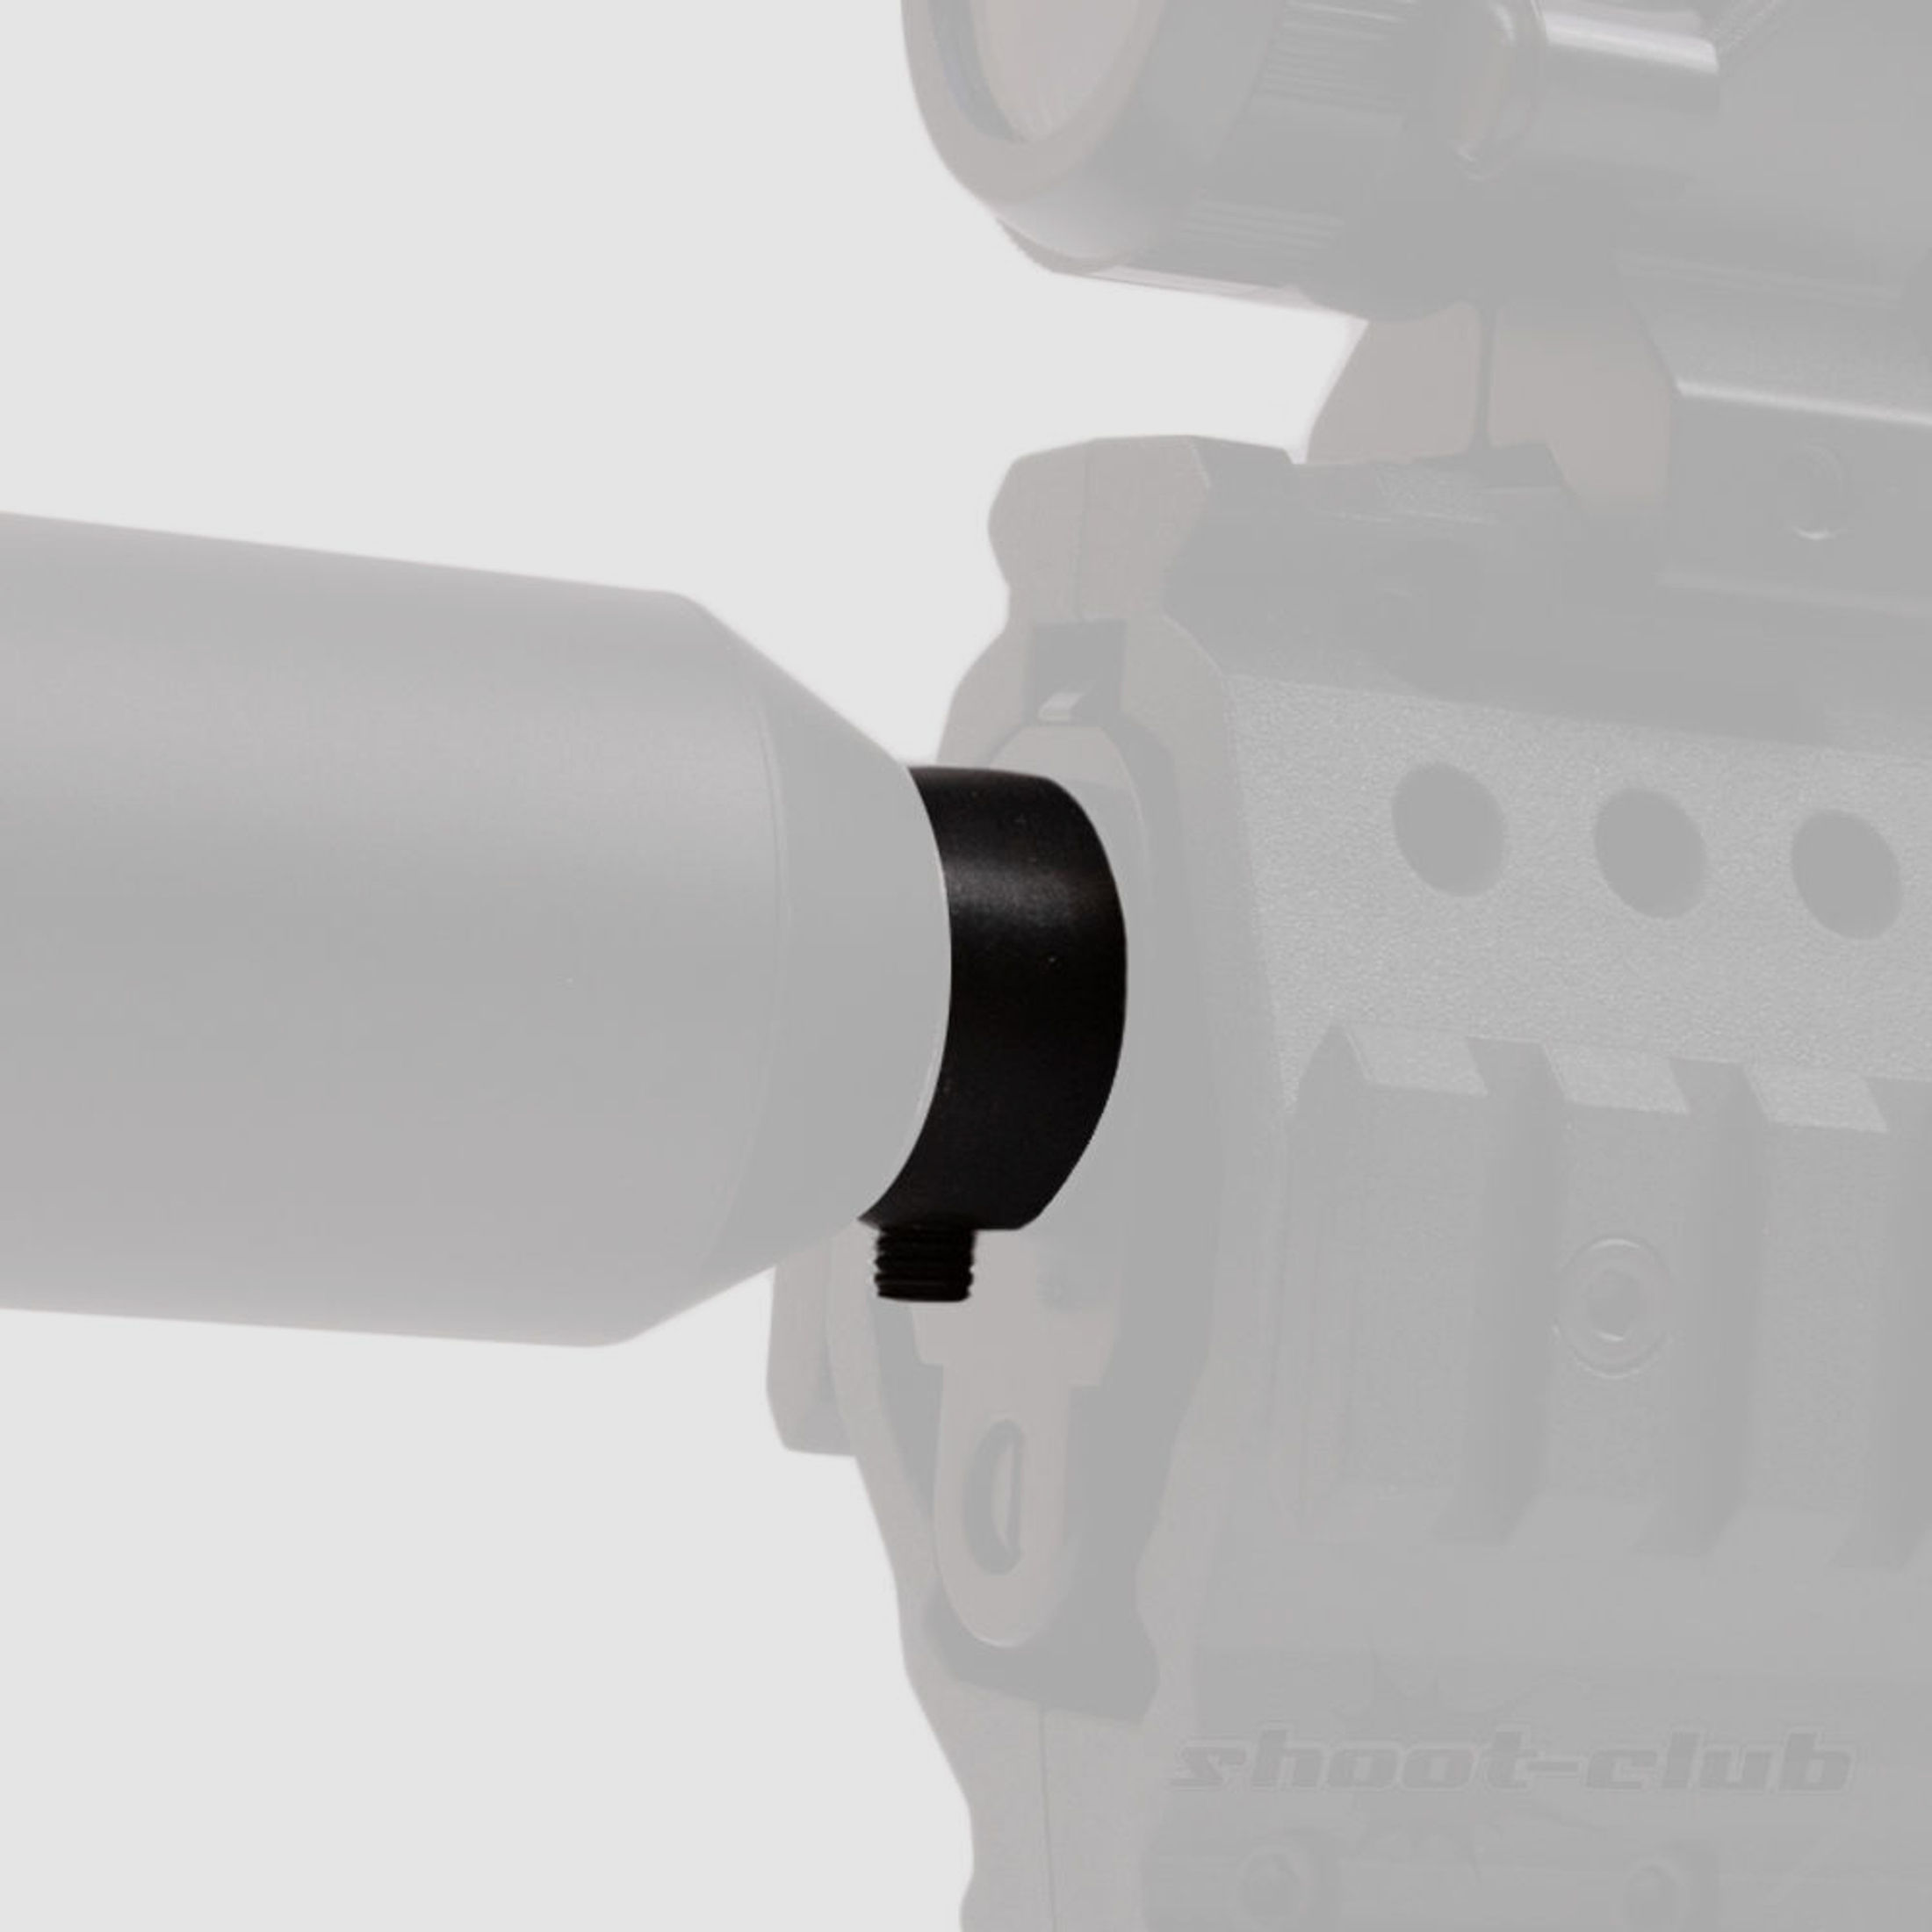 Schalldämpferadapter für Beretta M92 und Perfecta 32 Luftgewehr - Klemmmontage